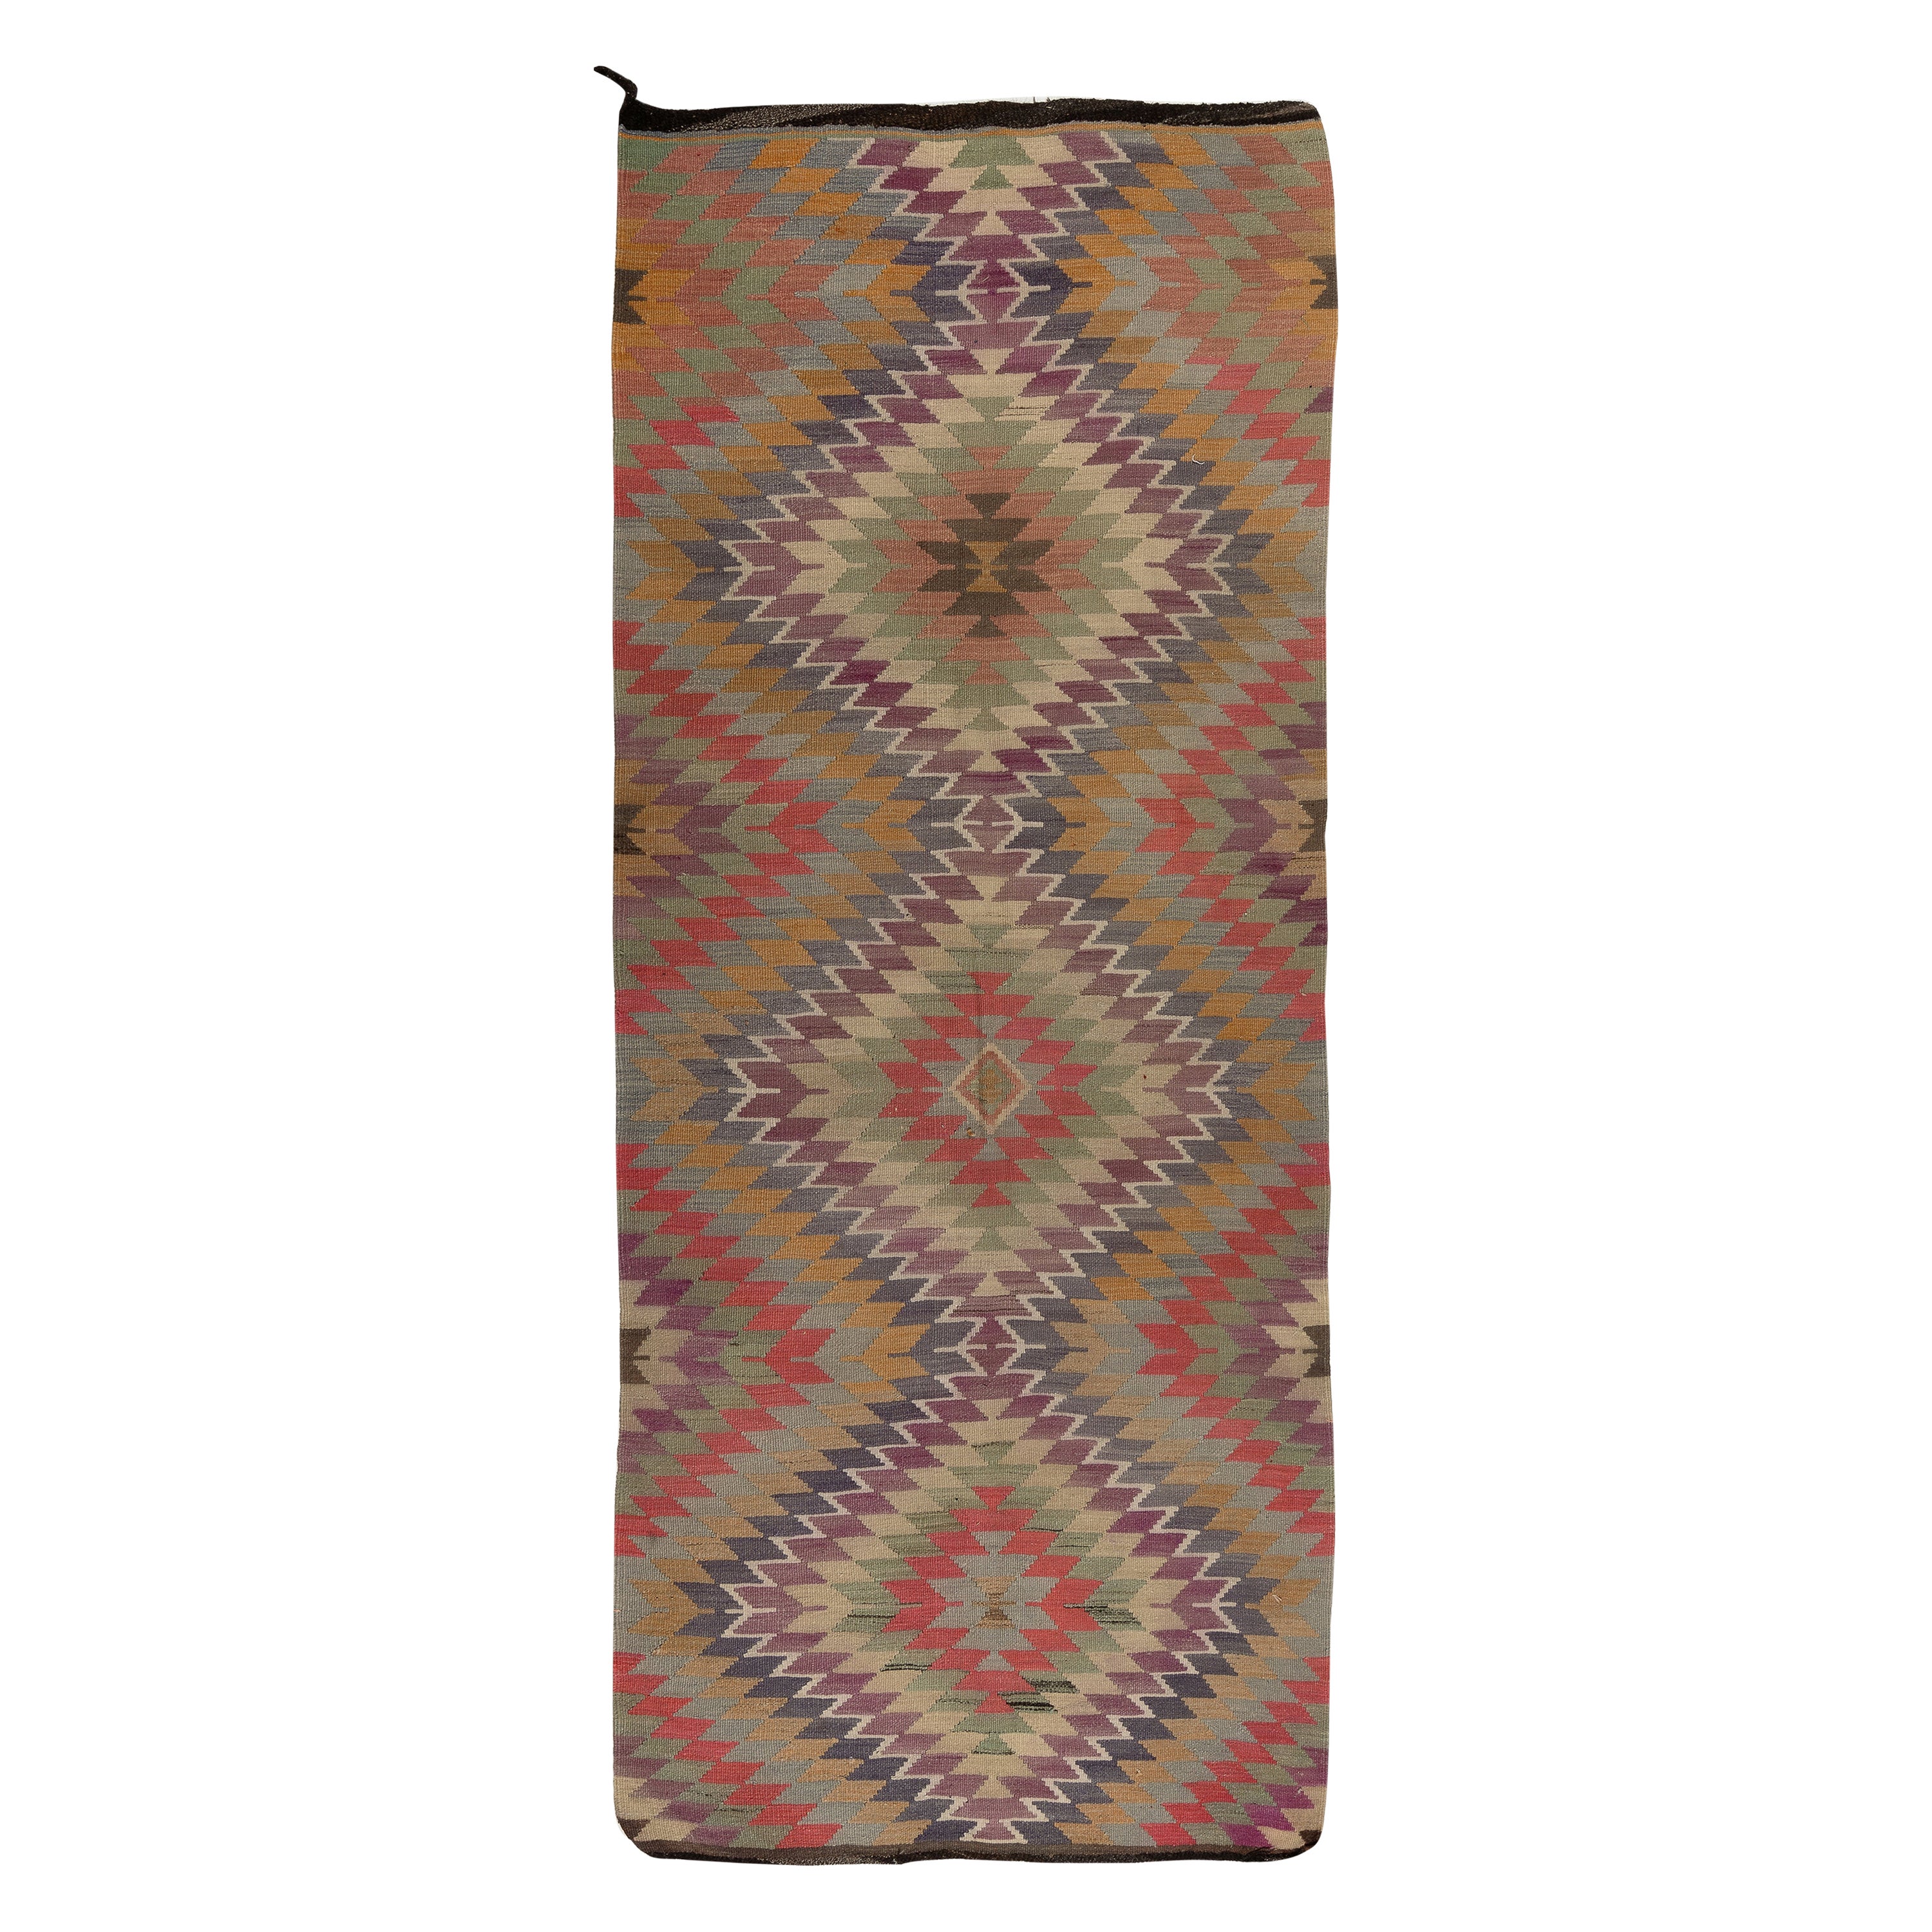 4.7x11 Ft Handgefertigter türkischer Kelim-Teppich aus Wolle mit Nested-Diamanten-Design